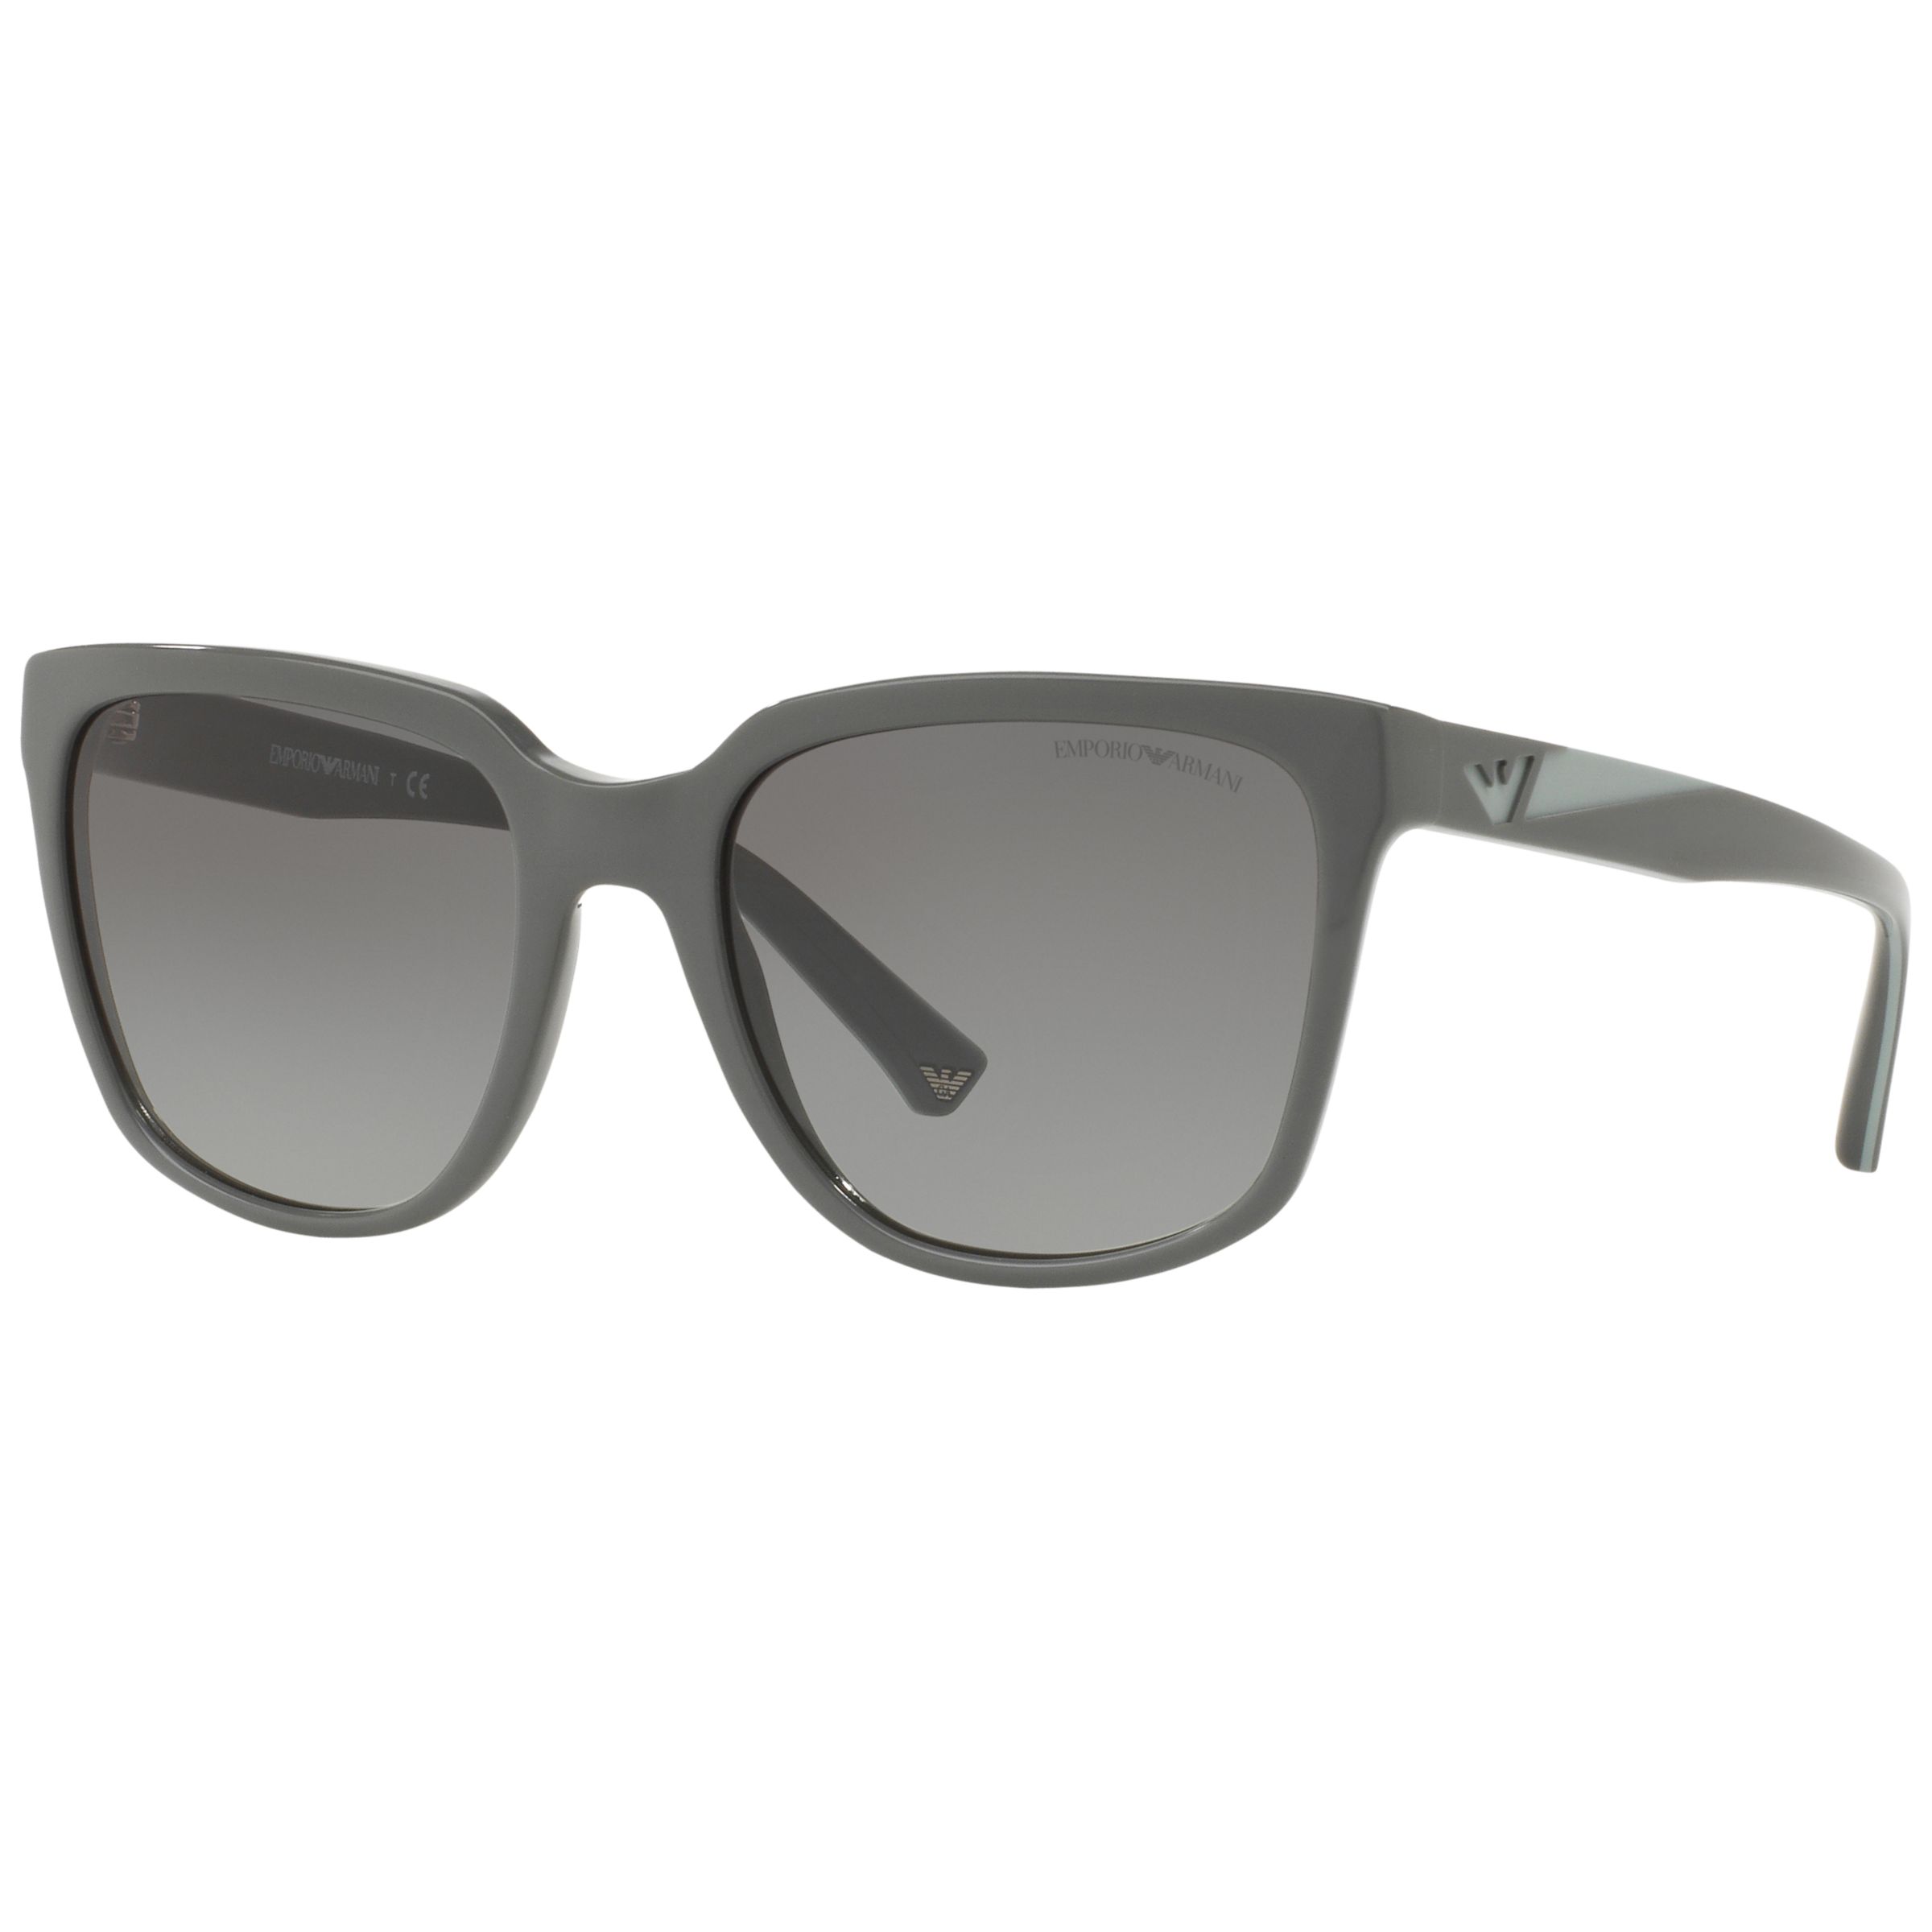 Emporio Armani EA4070 Square Gradient Sunglasses